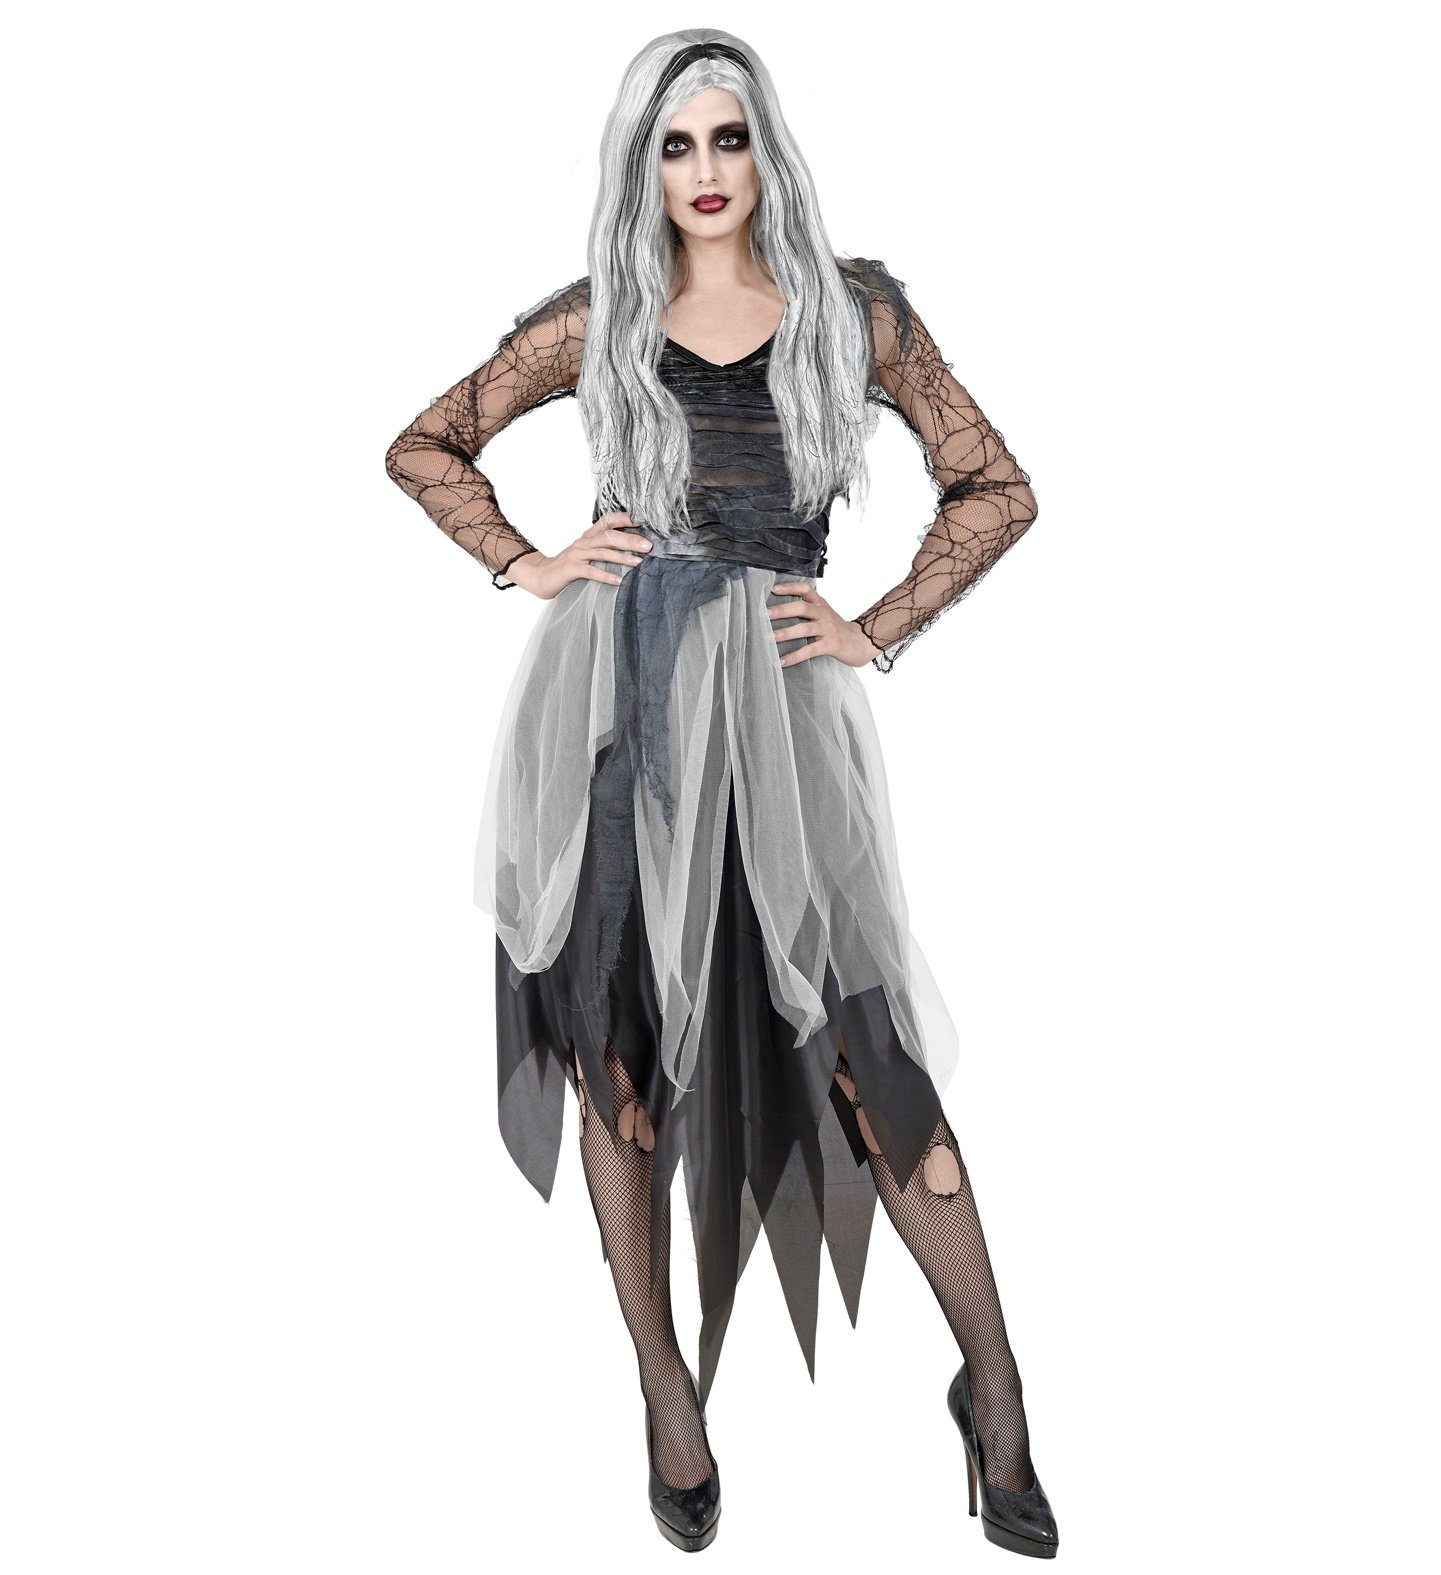 Widmann S.r.l. Hexen-Kostüm Halloween Kostüm 'Ghostly Spirit' für Damen, Geis